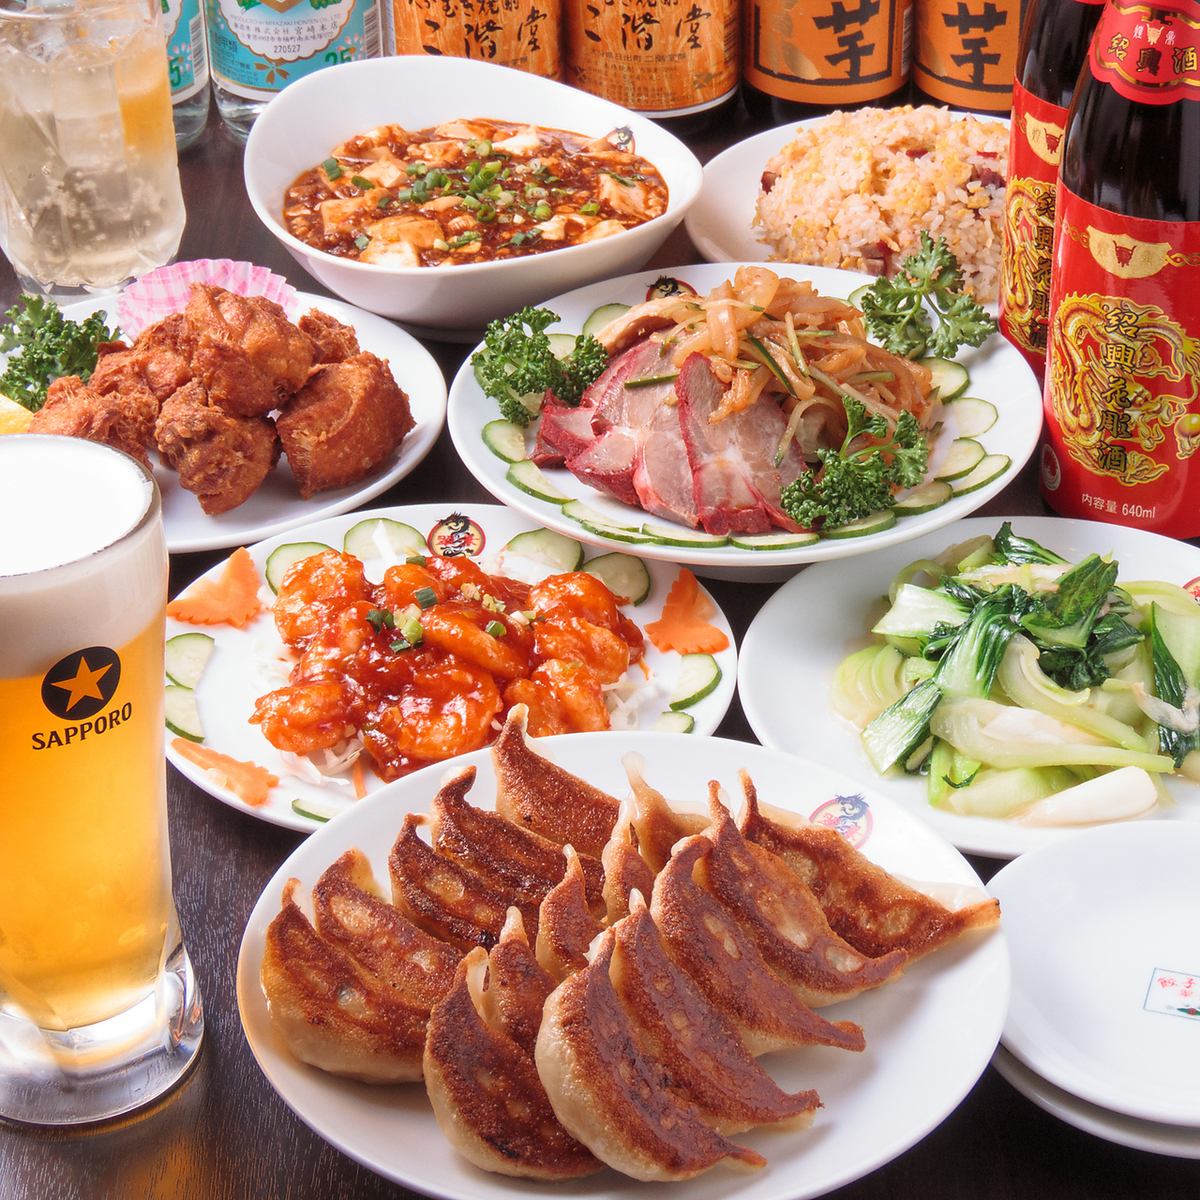 Midoriha 最受欢迎的煎饺都是自制的！无限量供应的套餐起价约为 2,000 日元。